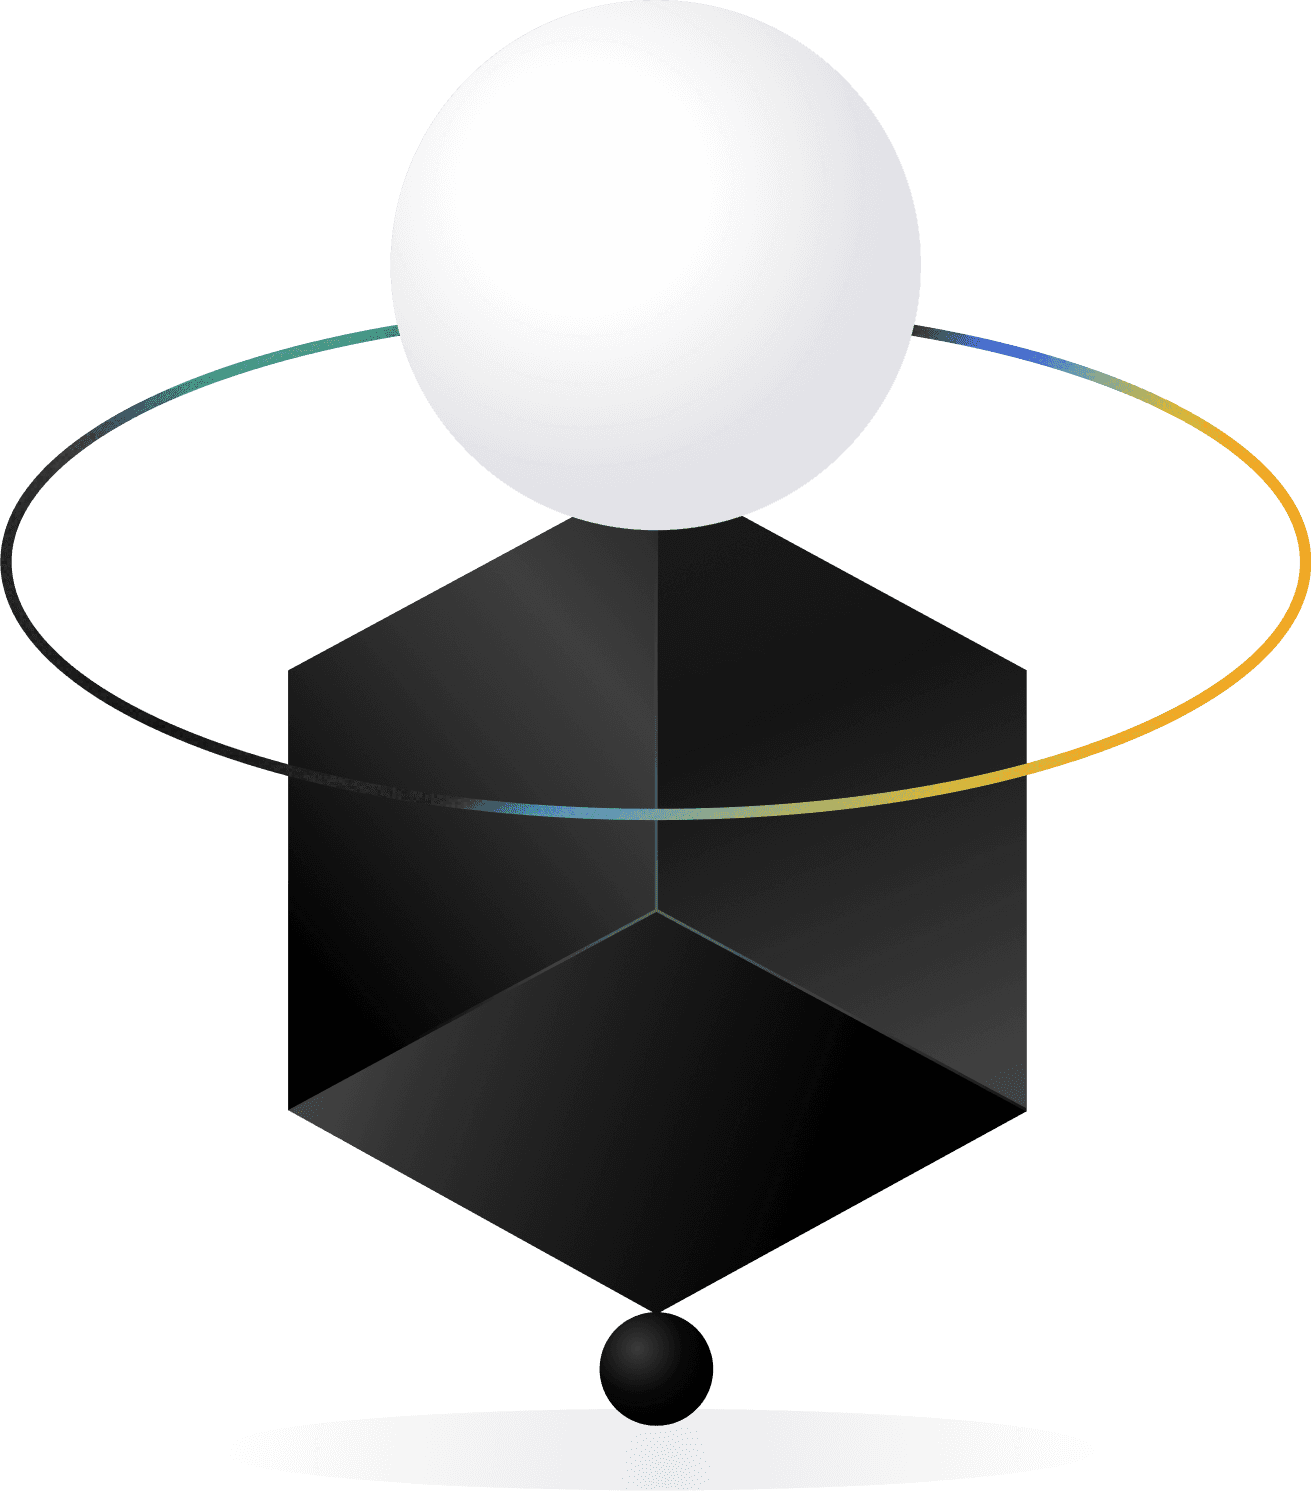 Gráfico abstracto con cubo oscuro y esfera clara para romper un caso práctico de UX.